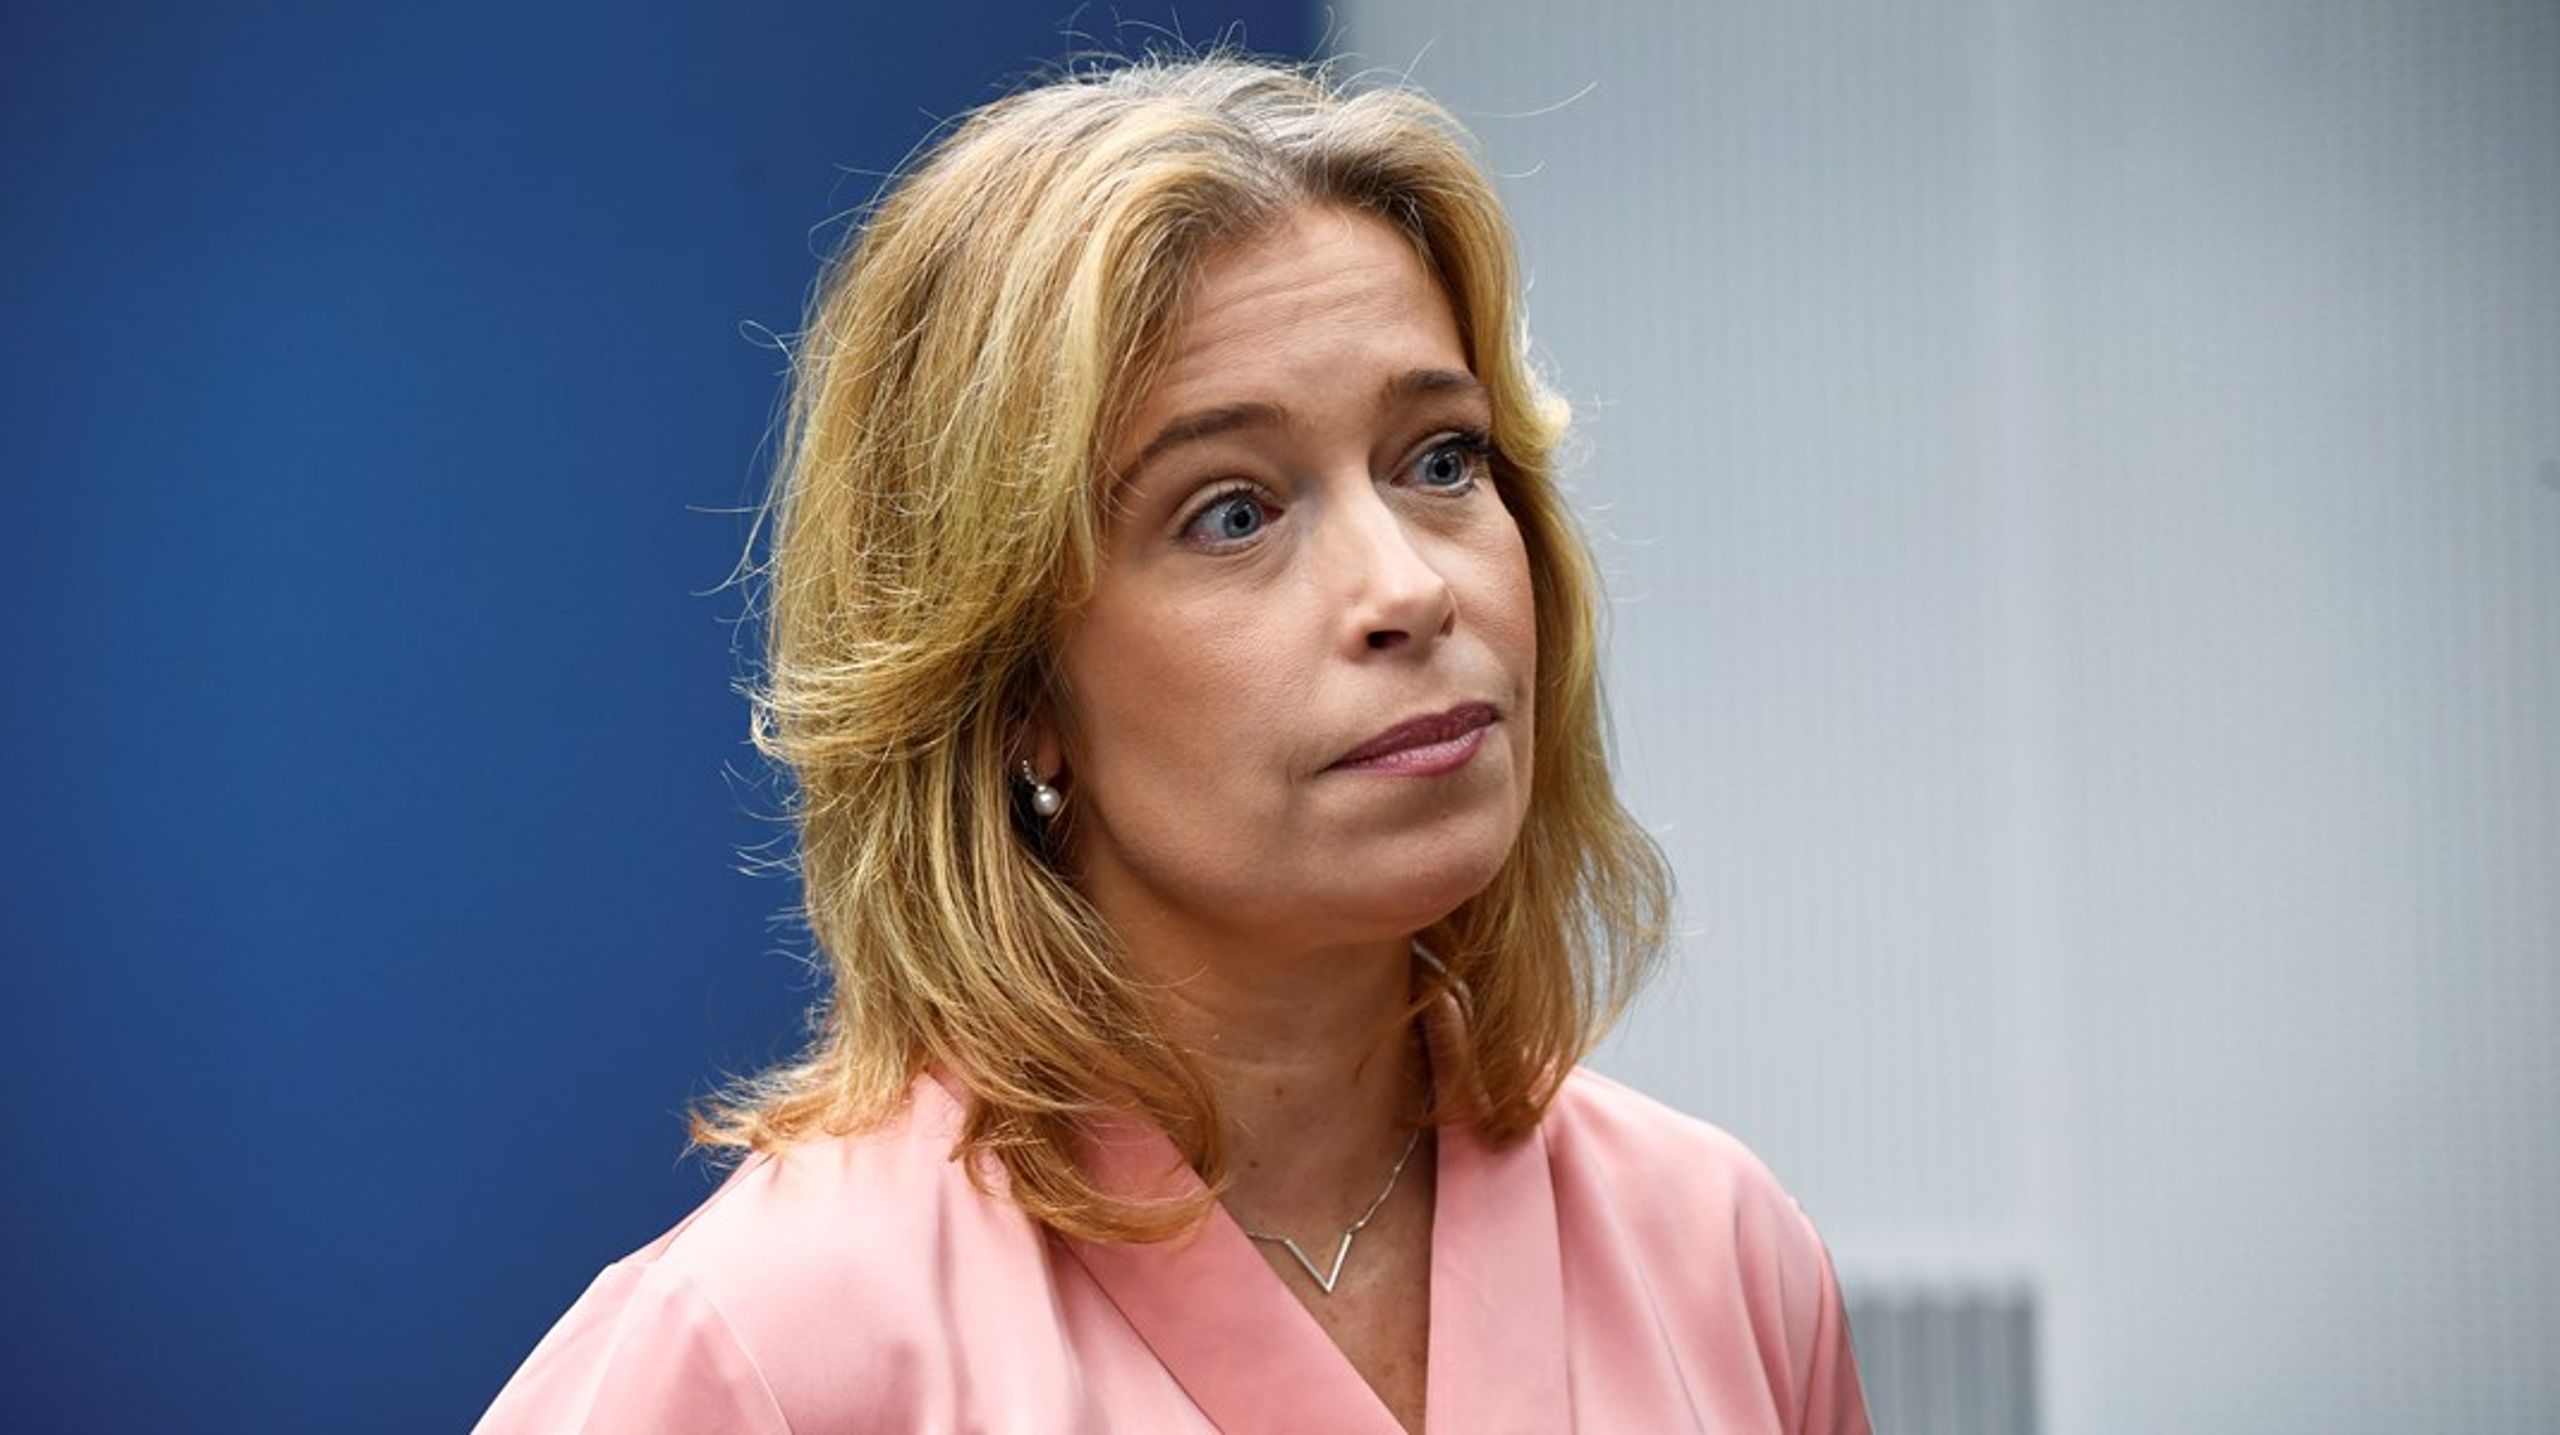 Klimat- och miljöminister Annika Strandhälls (S) lagförslag fick grönt ljus i den juridiska granskningen i Lagrådet.